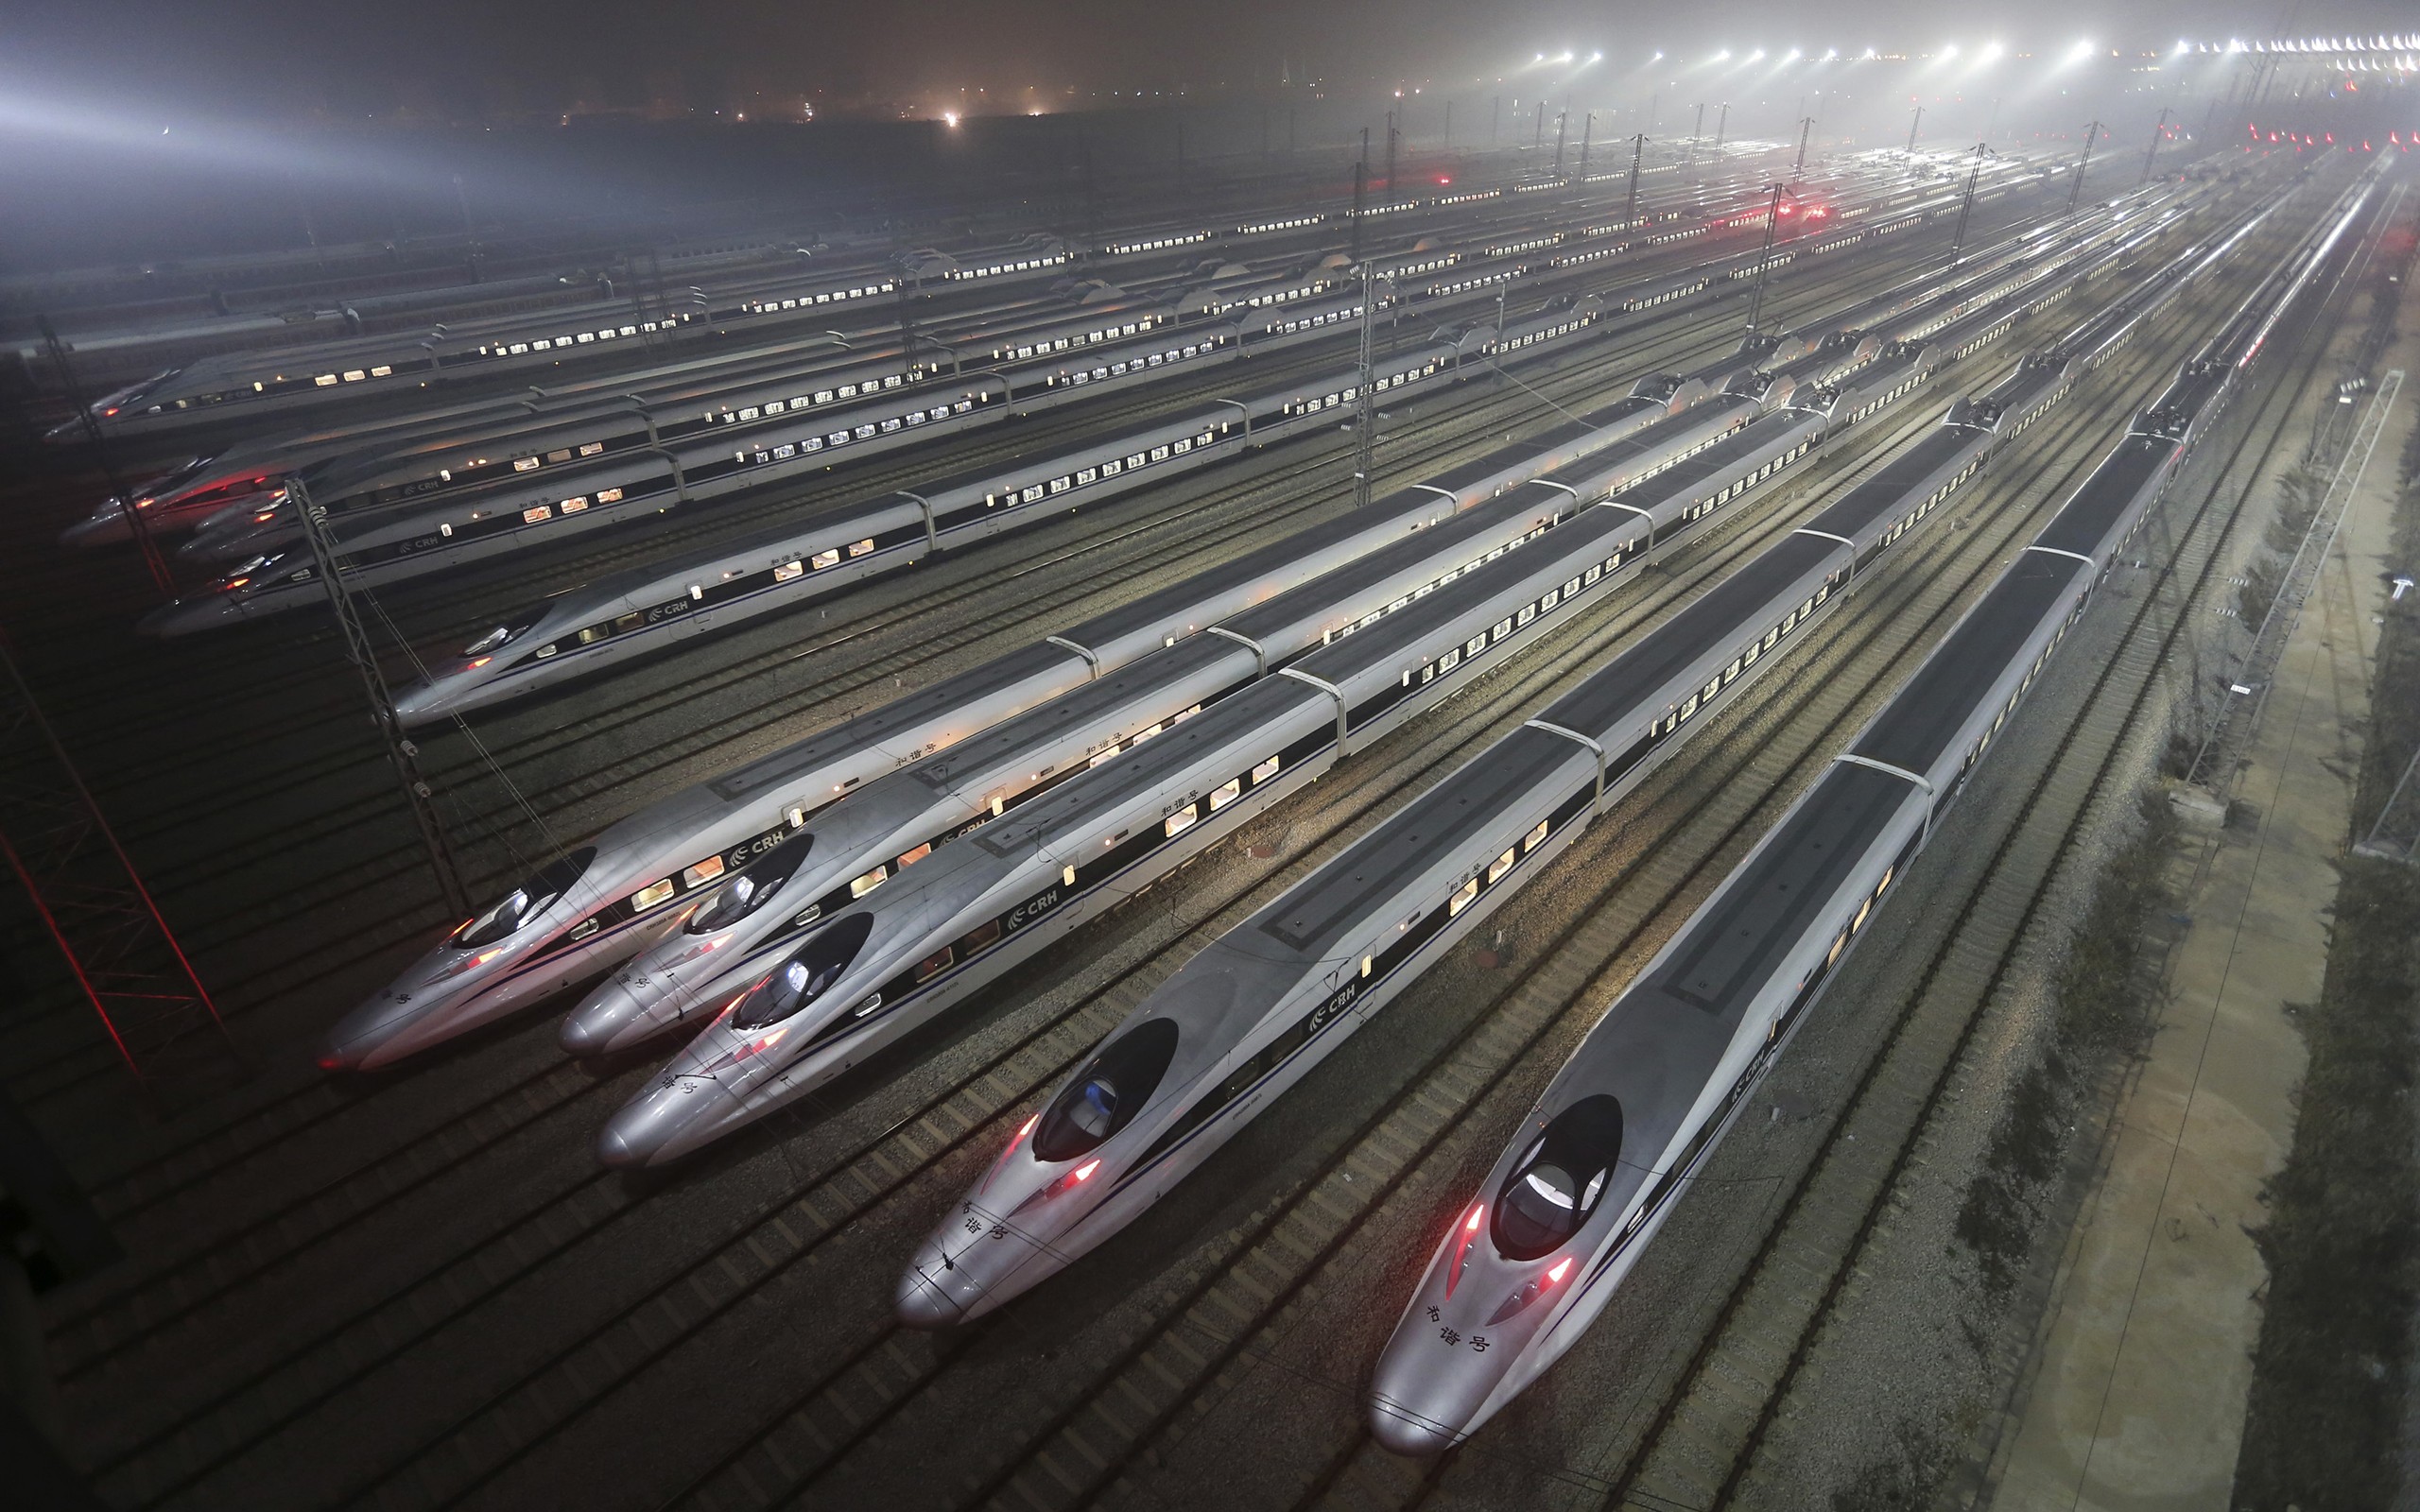 General 2560x1600 train rail yard night lights China transport mist vehicle Asia